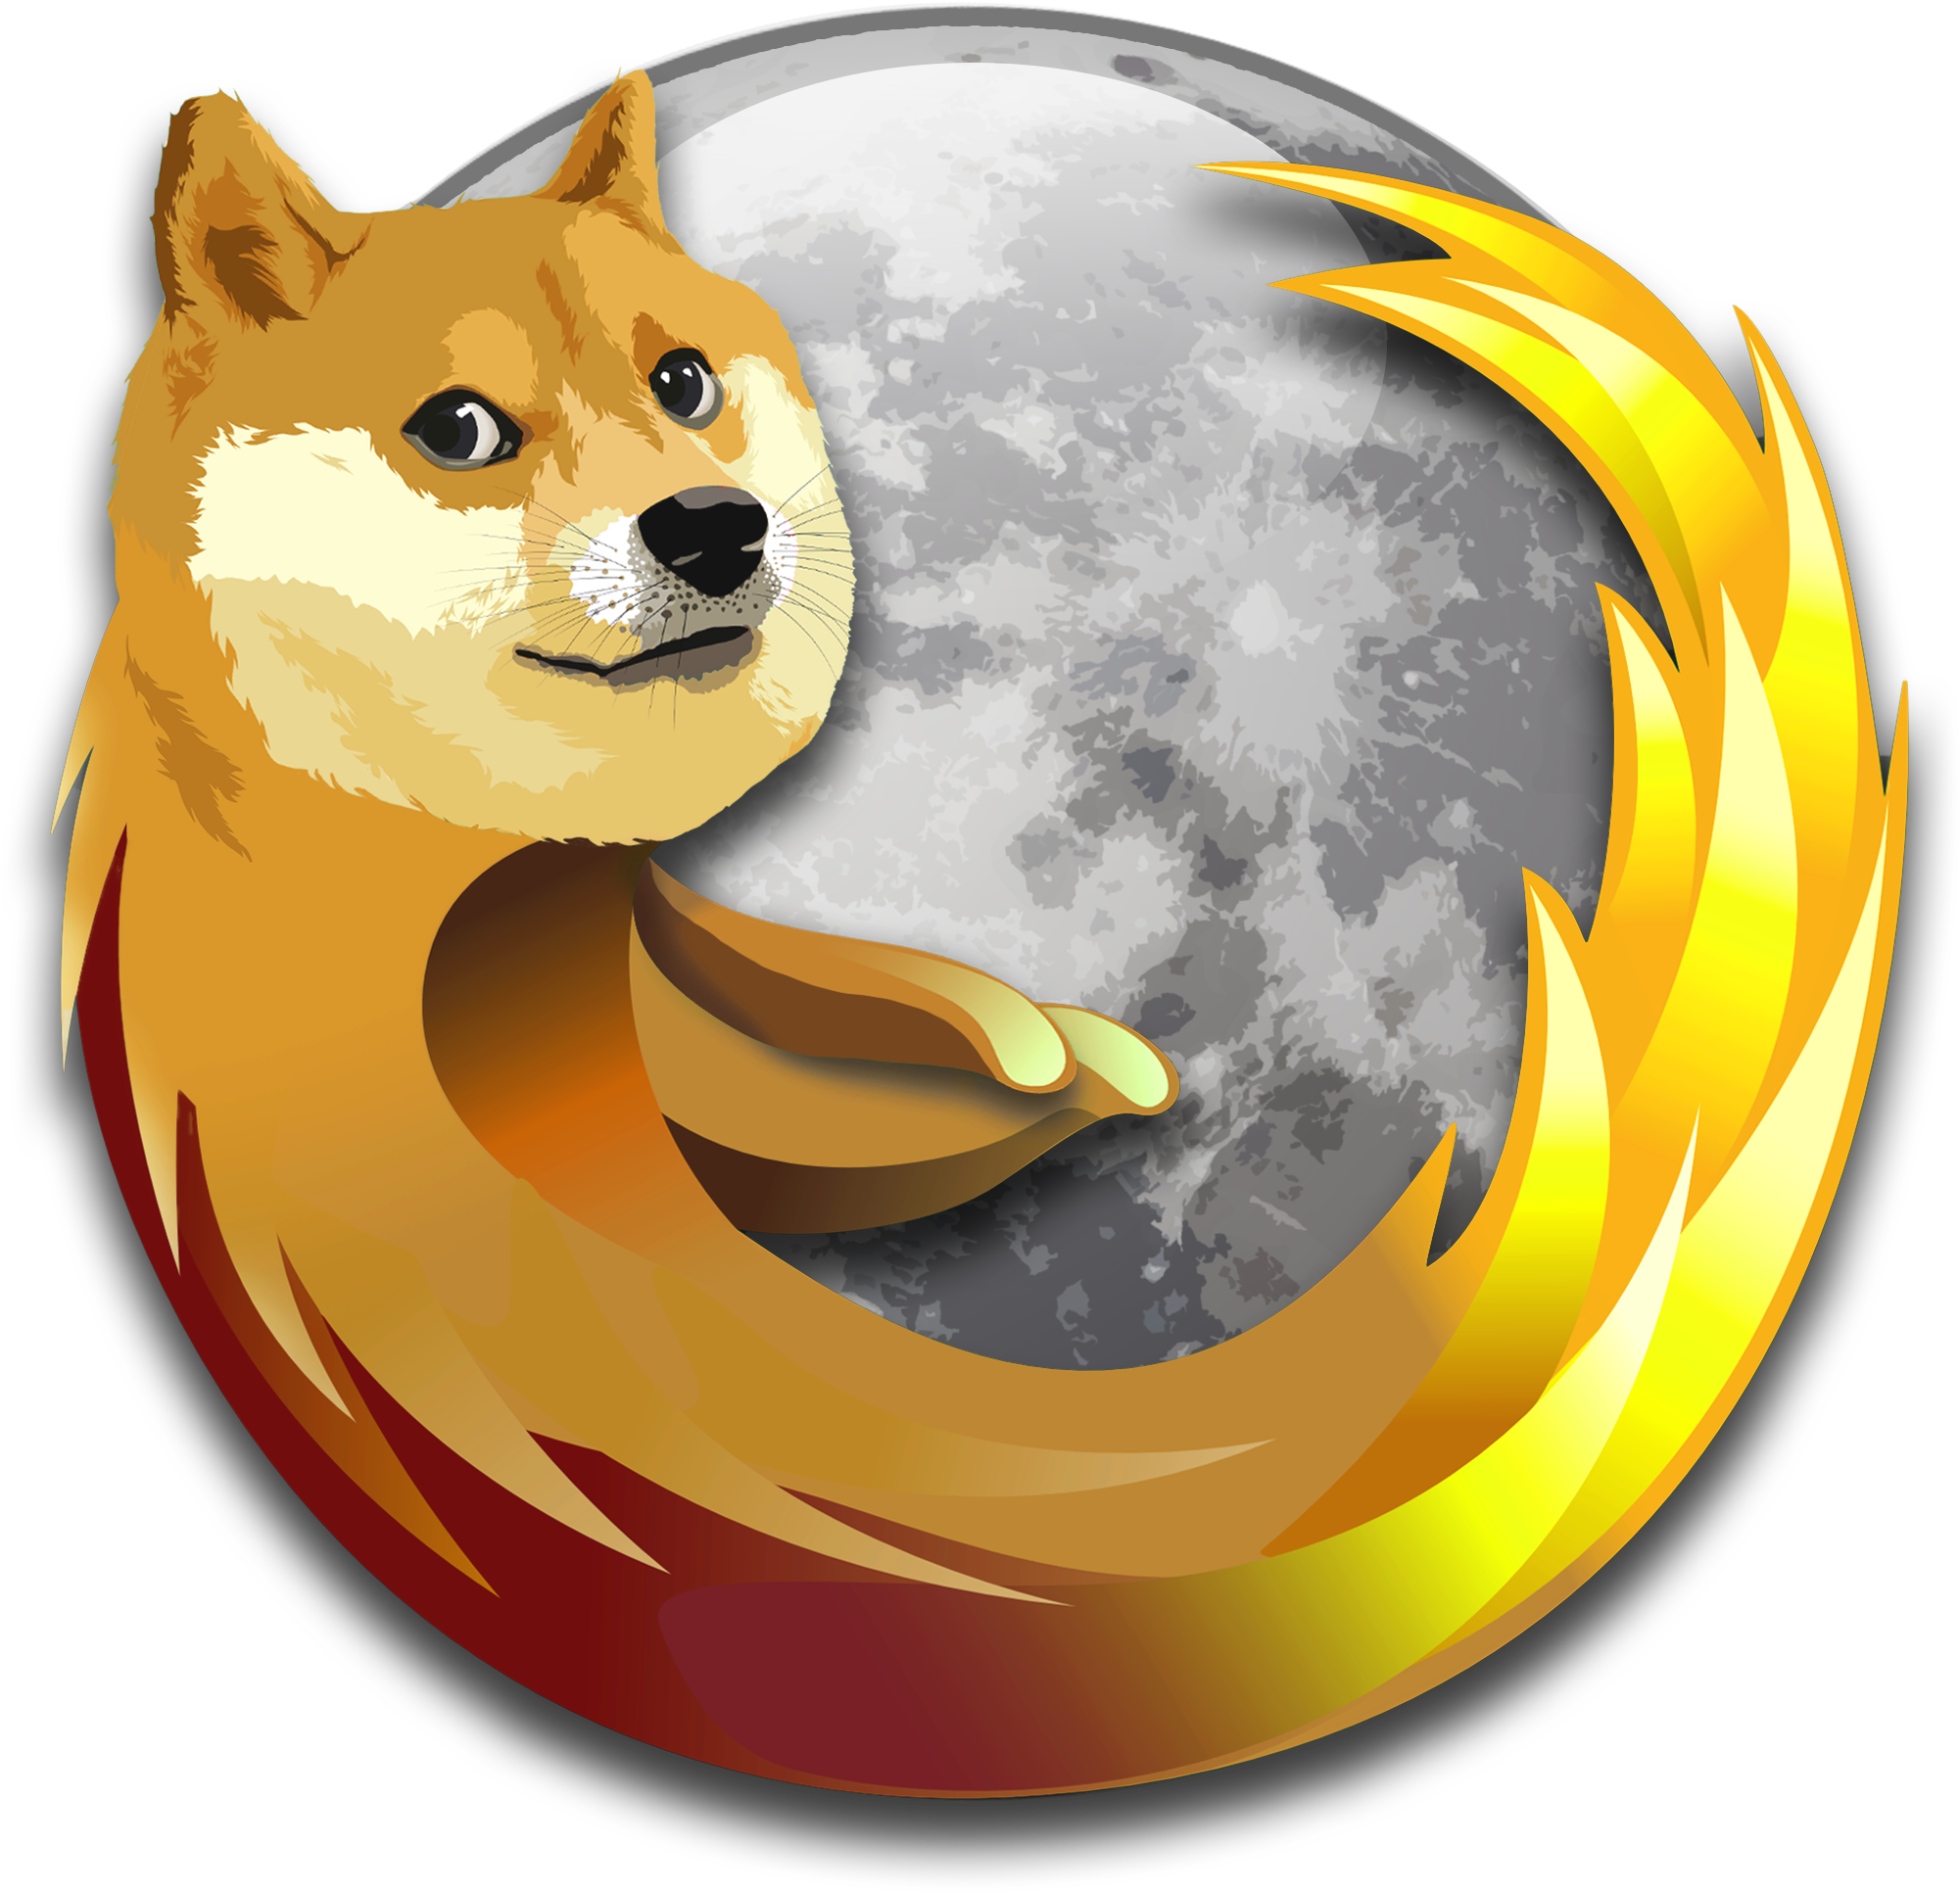 The Dogezilla Firefox Icon I Use - Doge Firefox (2000x2000)